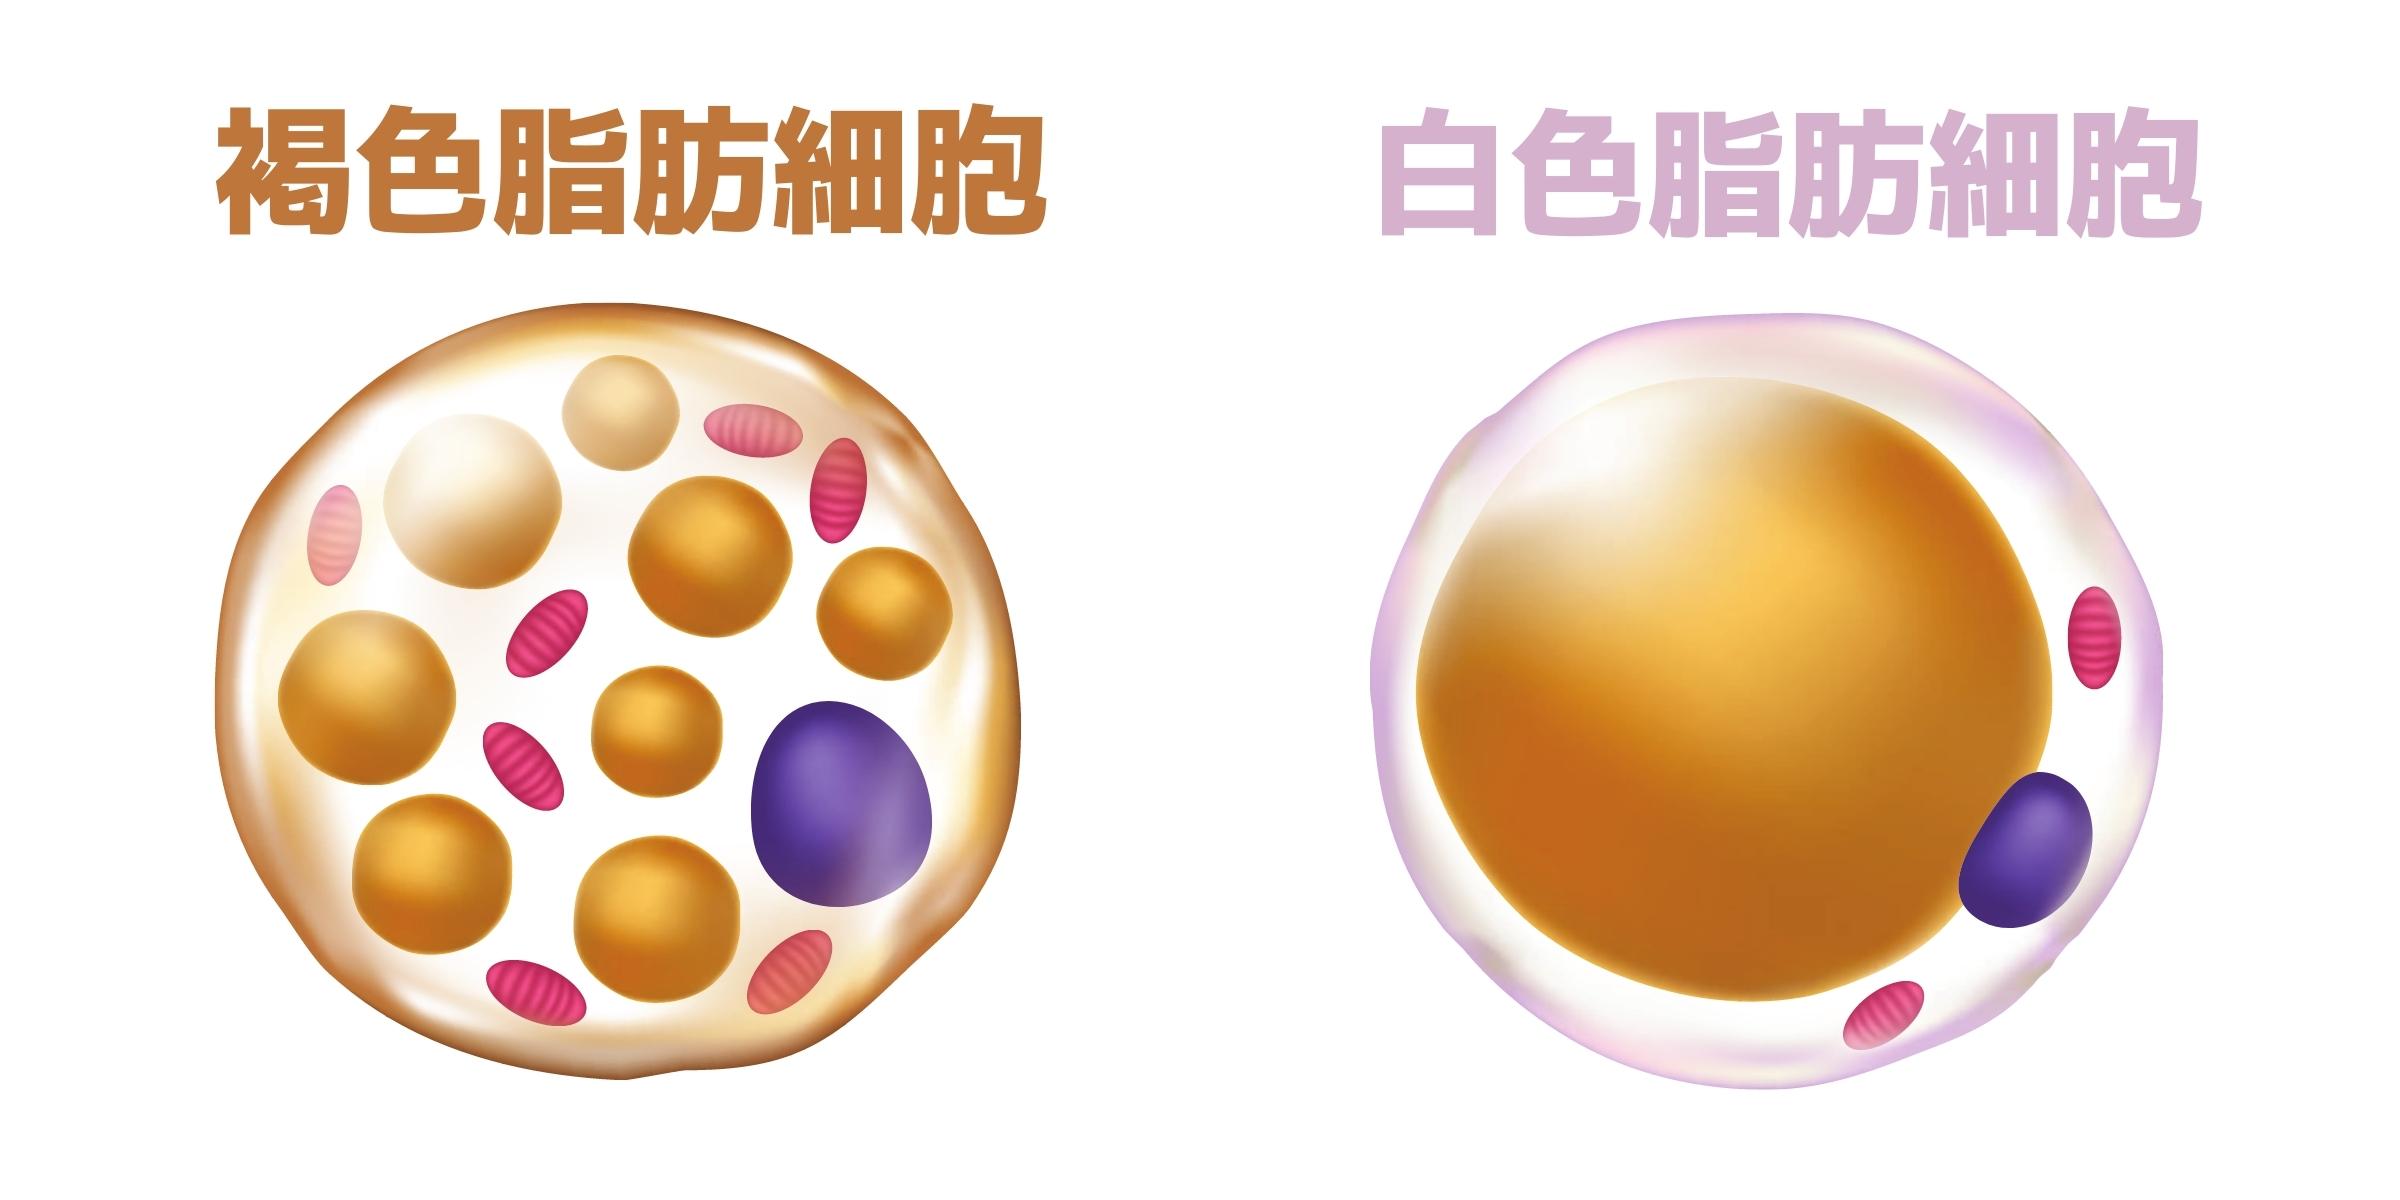 褐色脂肪細胞と白色脂肪細胞のイラスト